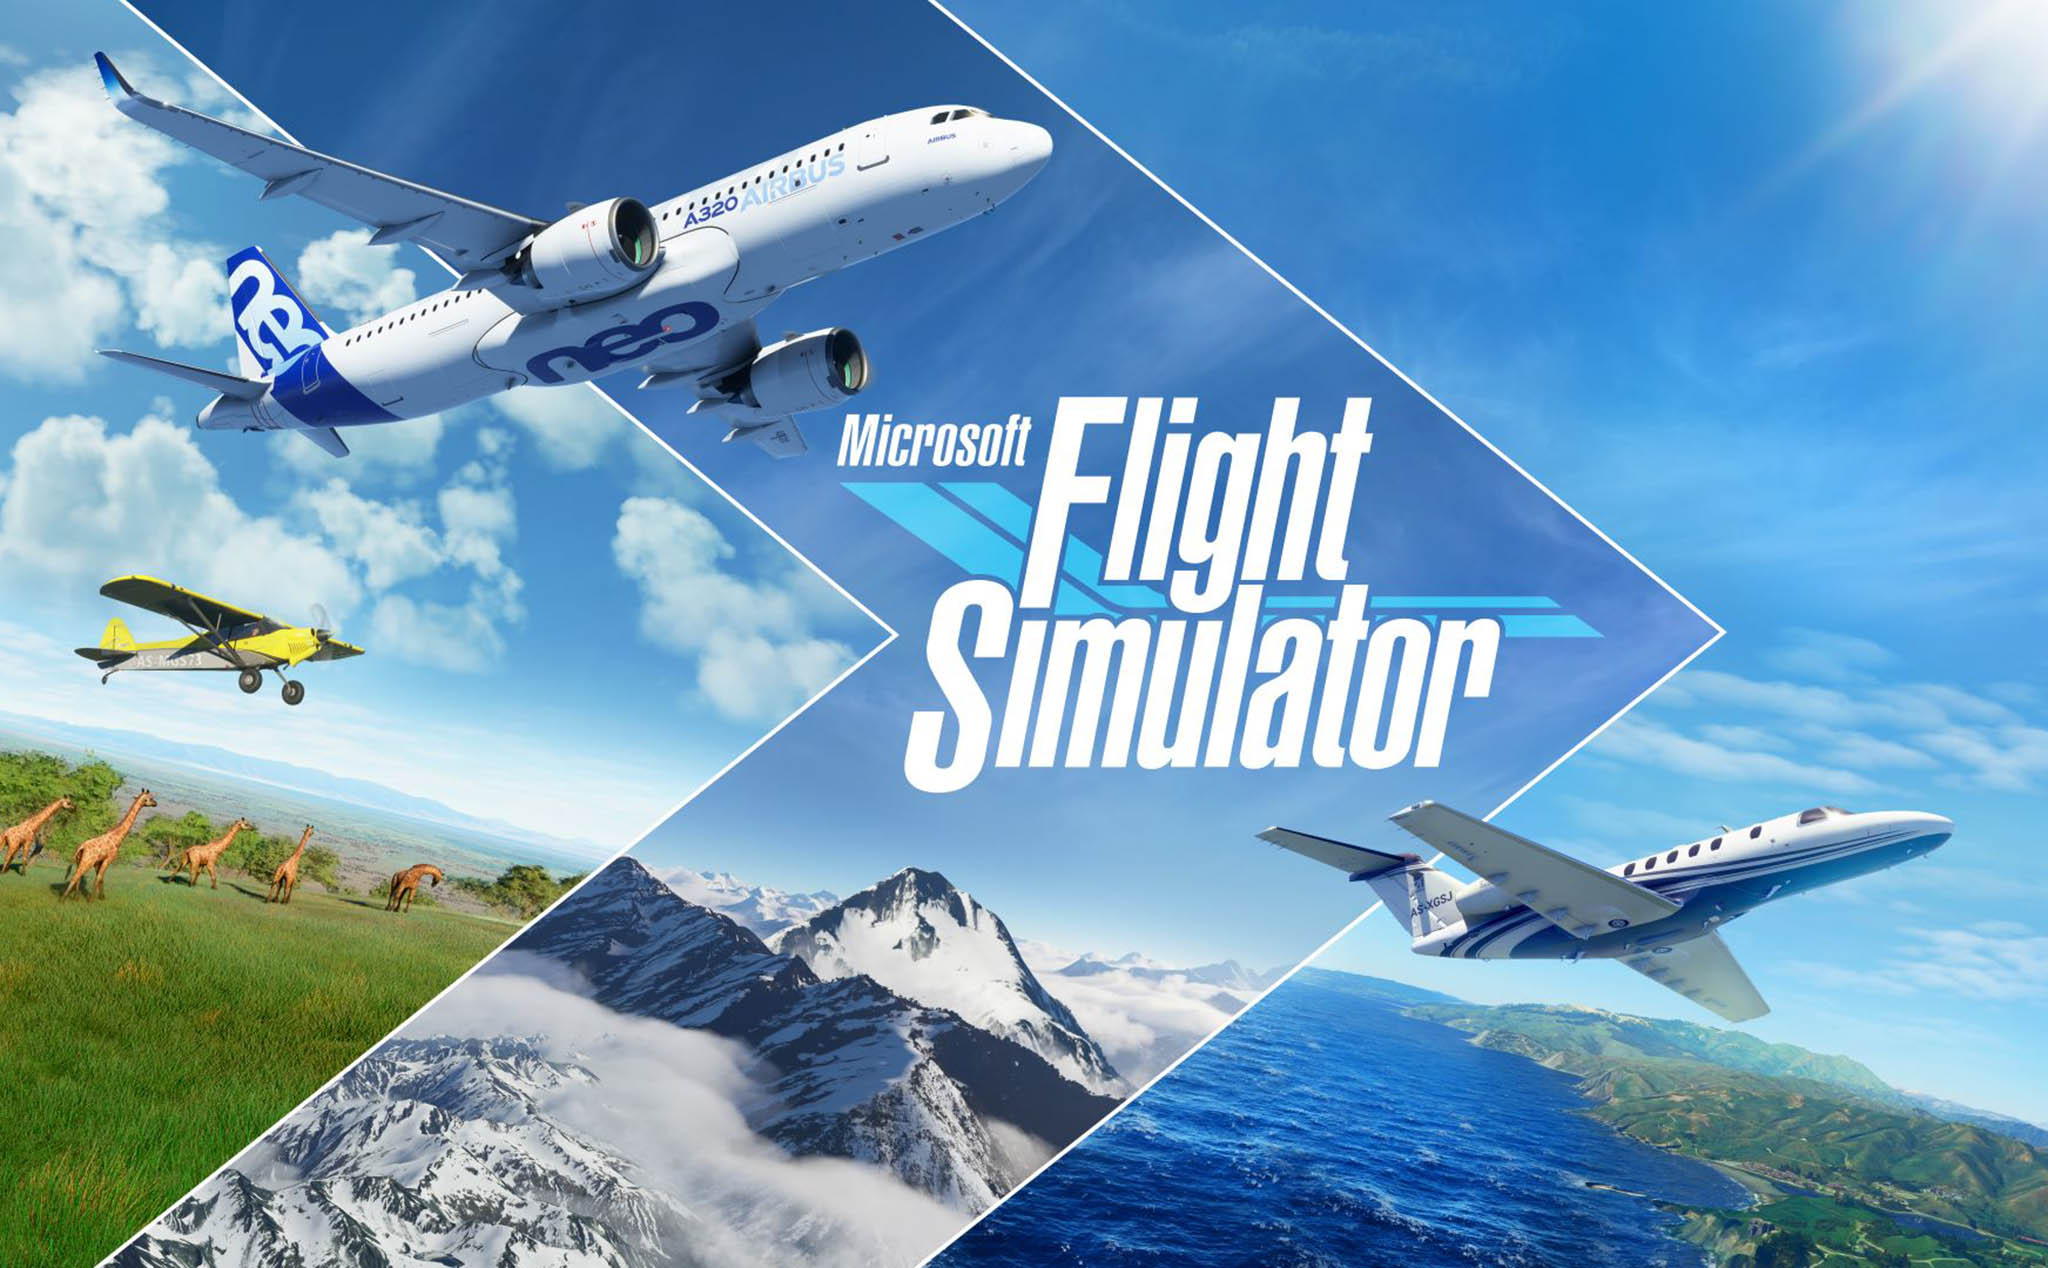 Flight Simulator phiên bản siêu thực ấn định ngày ra mắt 18 tháng 8 2020